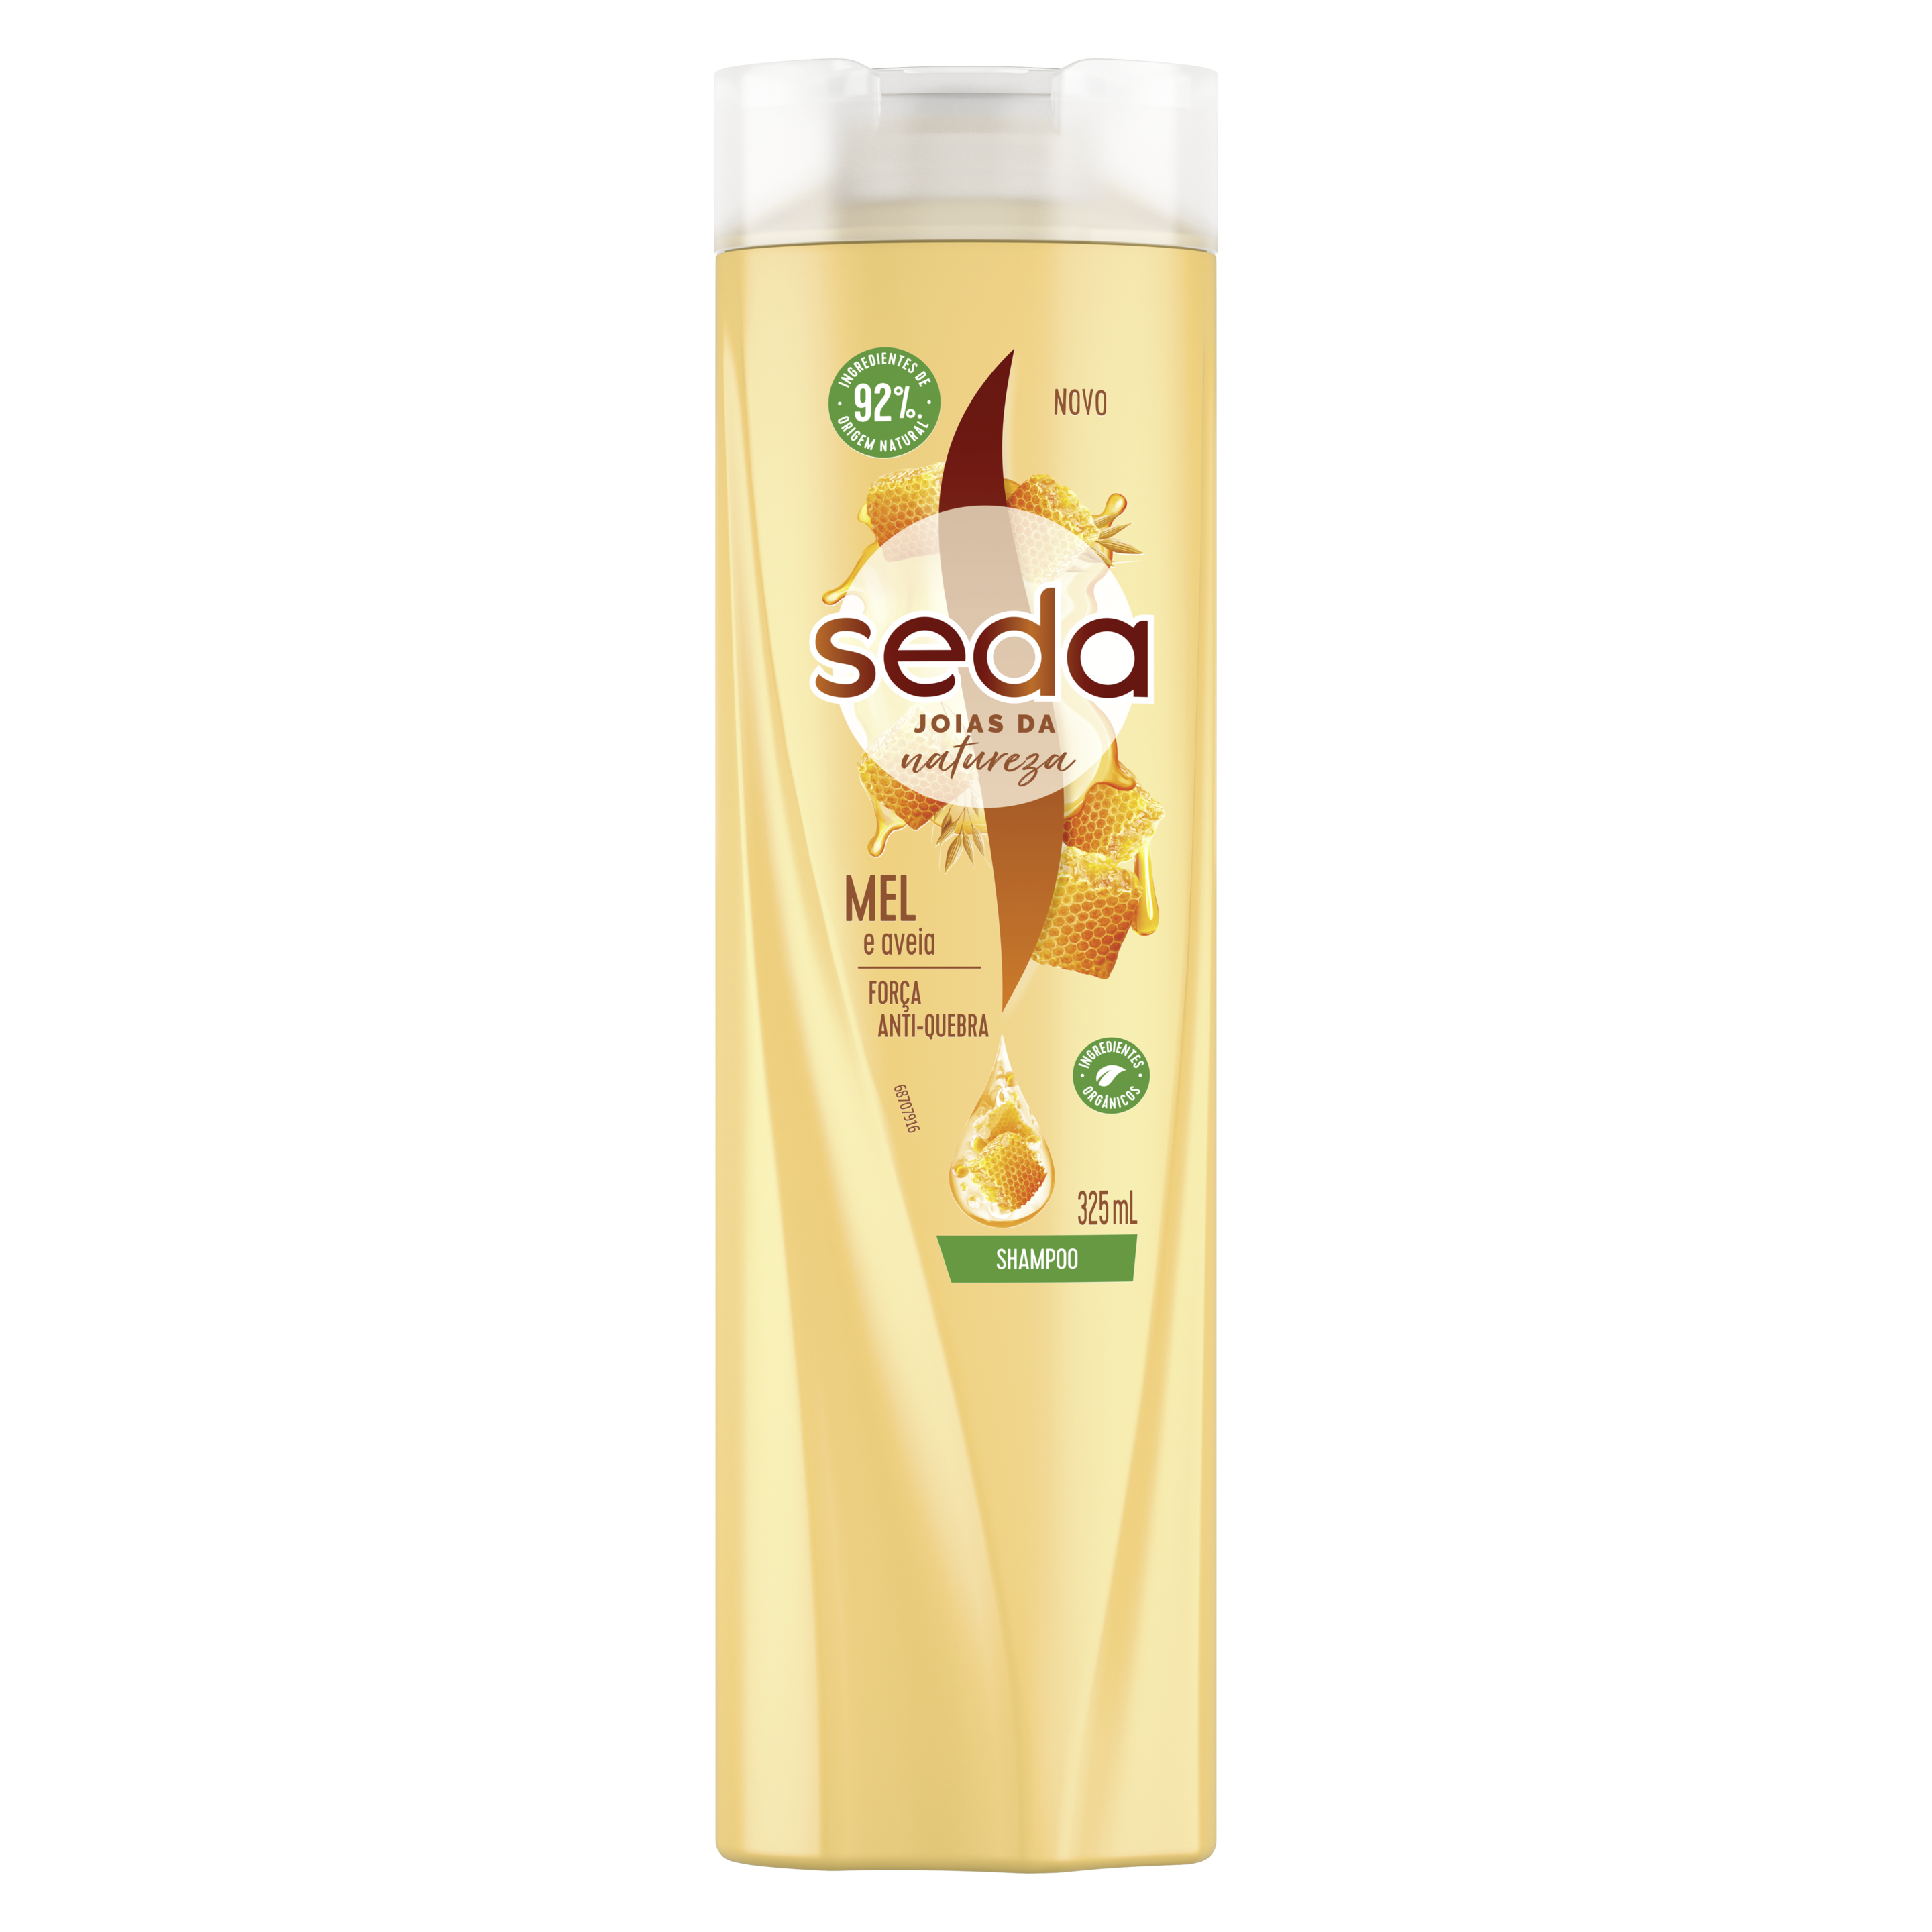 Uma imagem frontal da embalagem de Shampoo Seda Jóias da Natureza Mel e Aveia 325ml